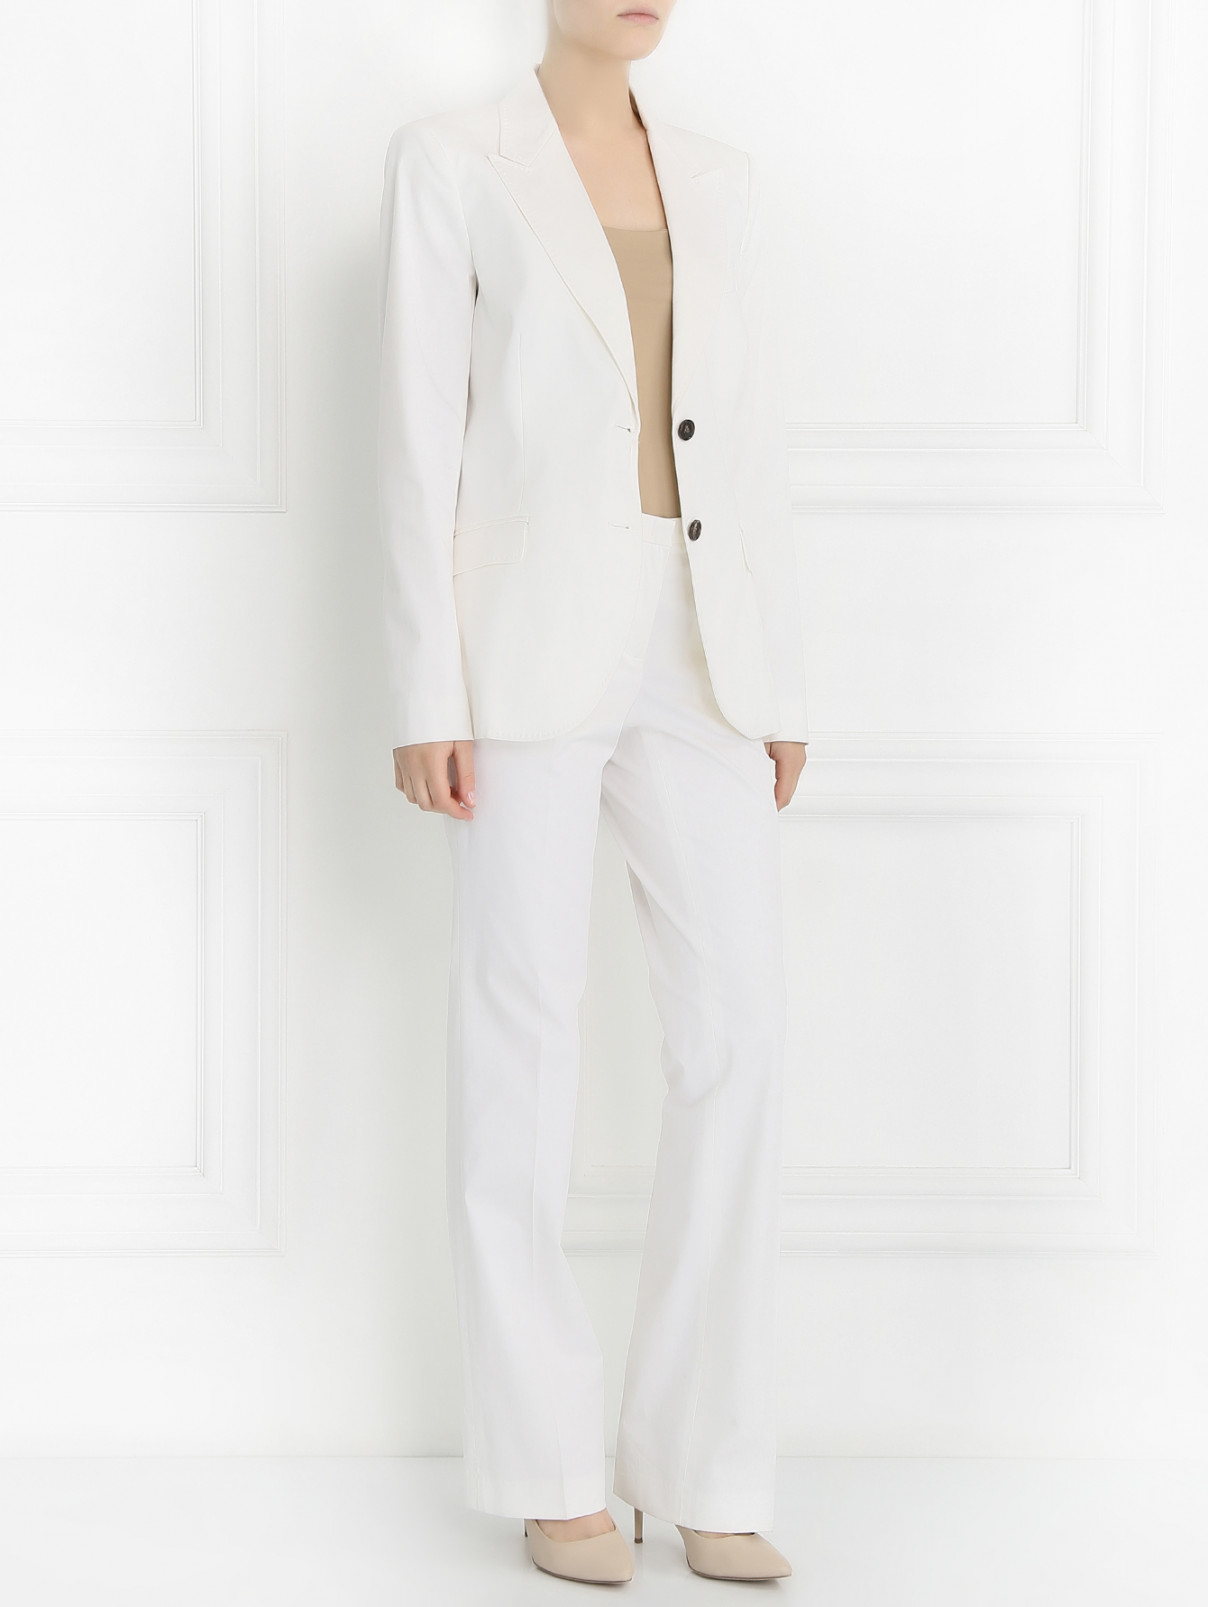 Брючный костюм из хлопка Alberto Biani  –  Модель Общий вид  – Цвет:  Белый